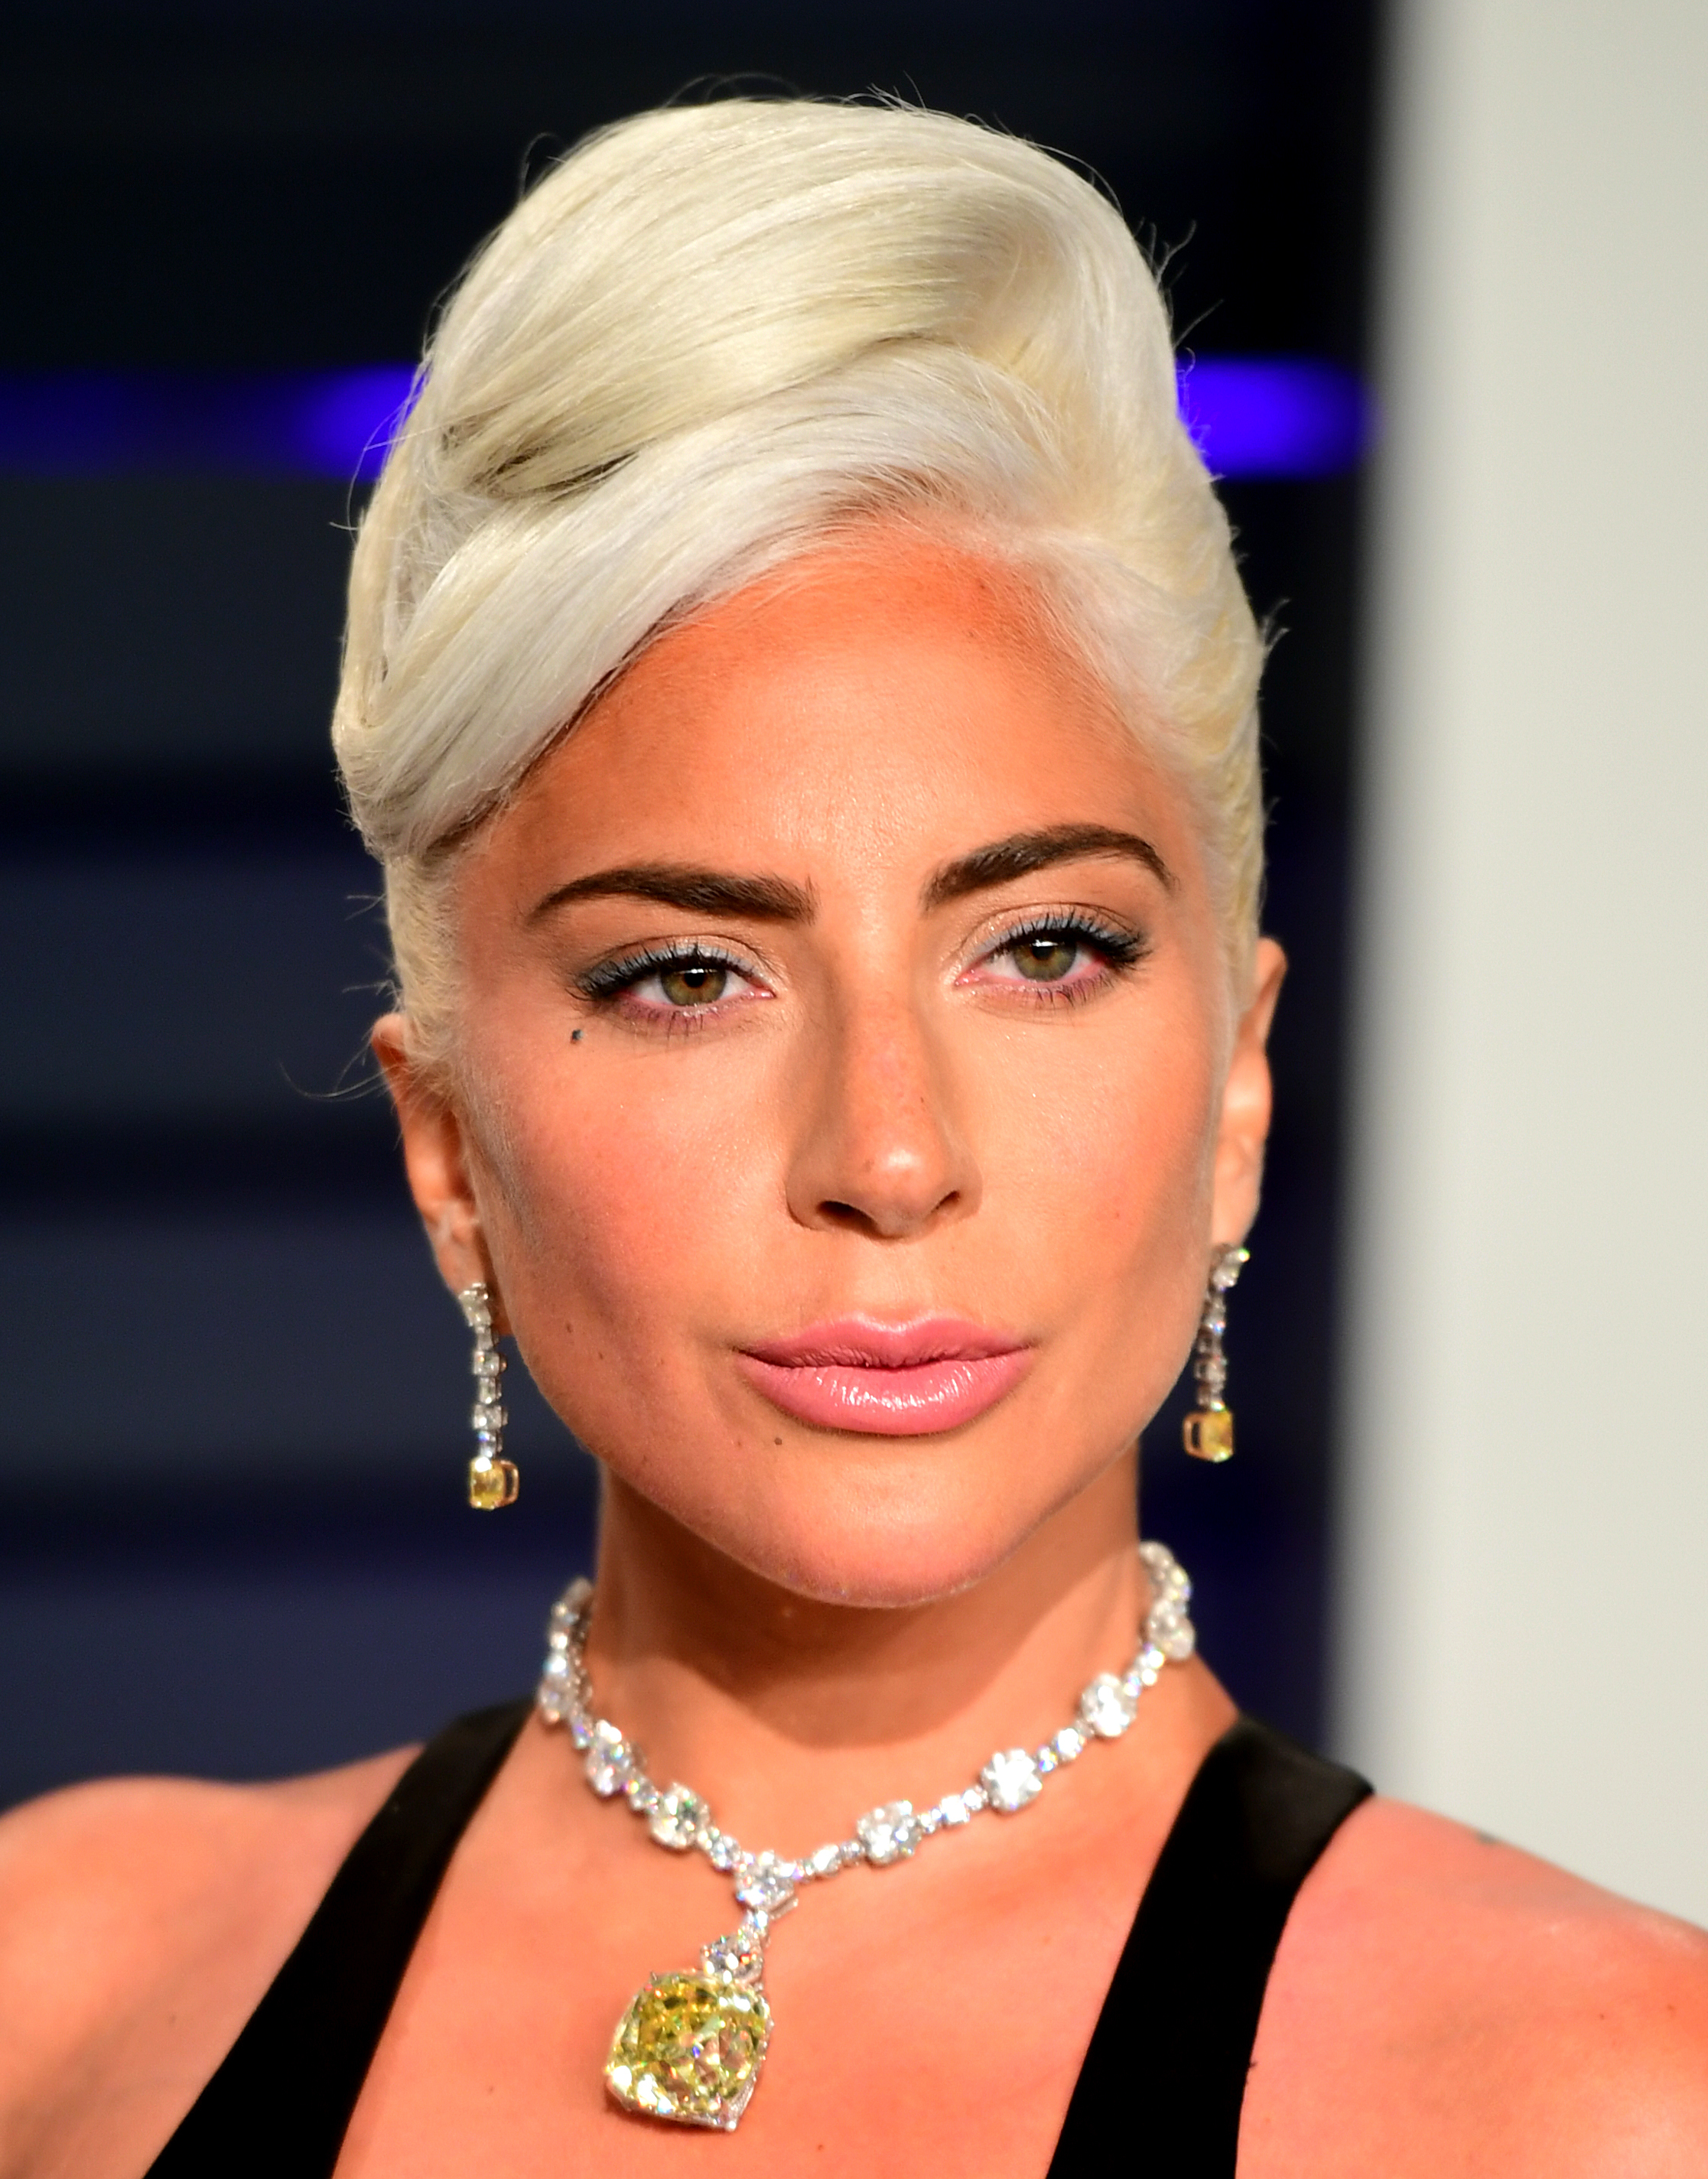 Lady Gaga at the 2019 Academy Awards